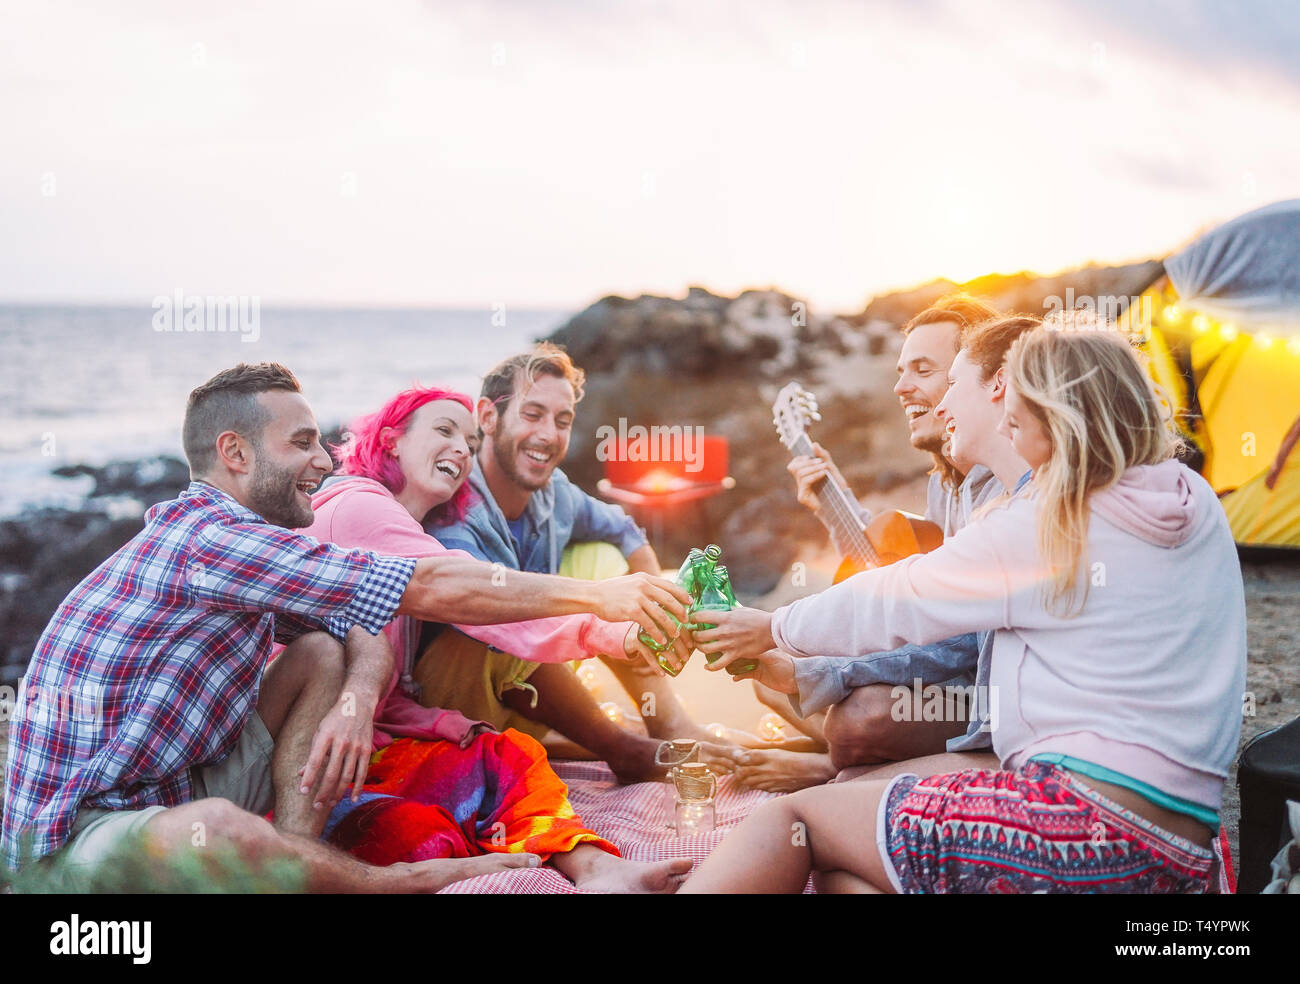 Groupe d'amis acclamer avec beers outdoor - Happy people camping avec tente et faire un barbecue s'amuser toasting bouteilles de bière Banque D'Images